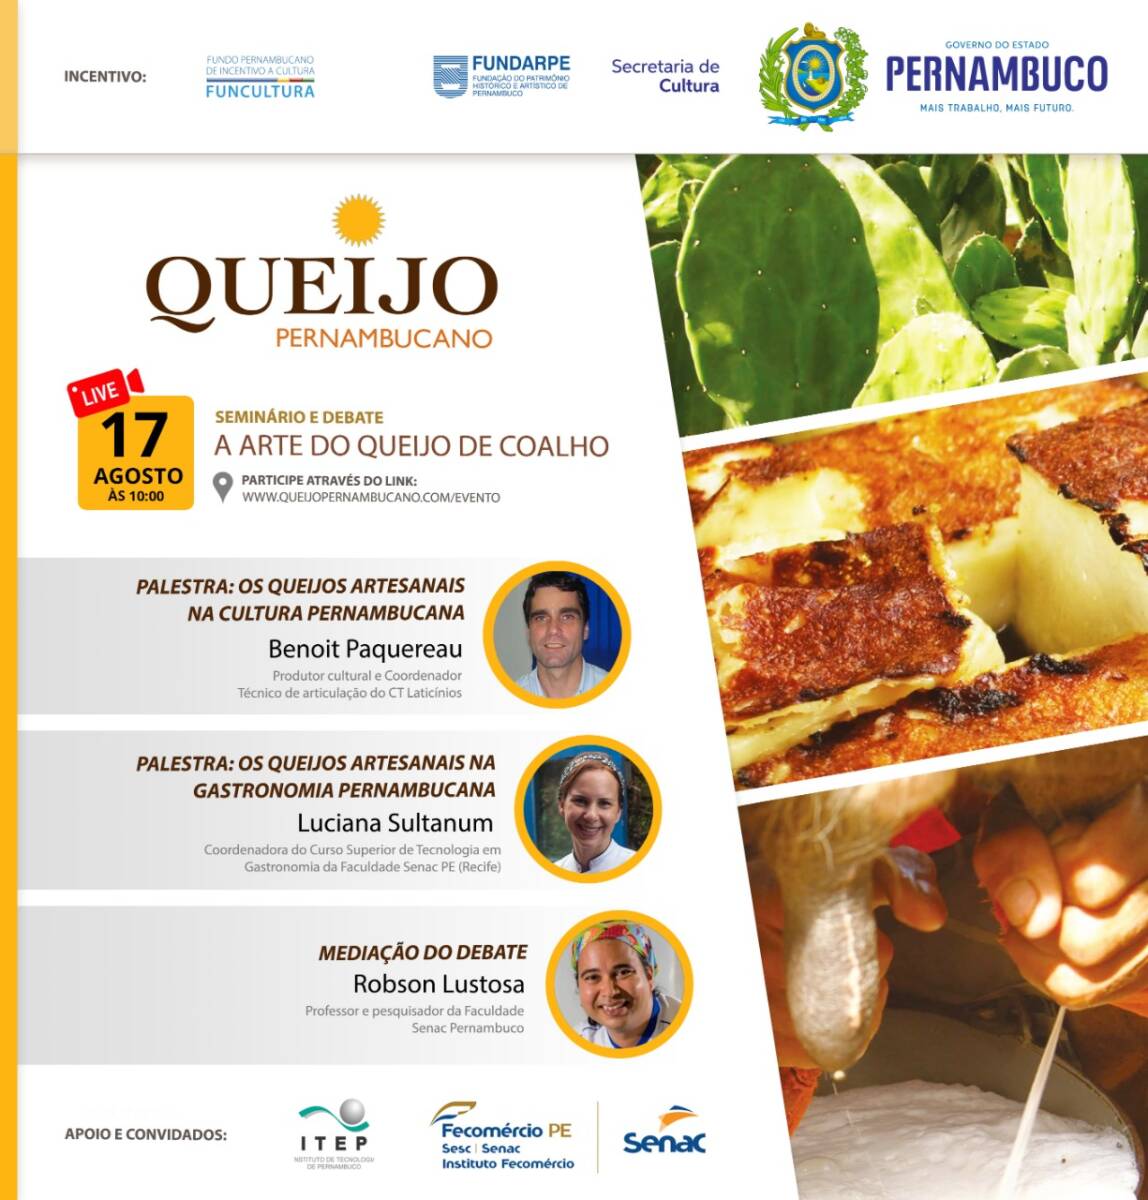 Seminário discute o queijo pernambucano na cultura e na gastronomia